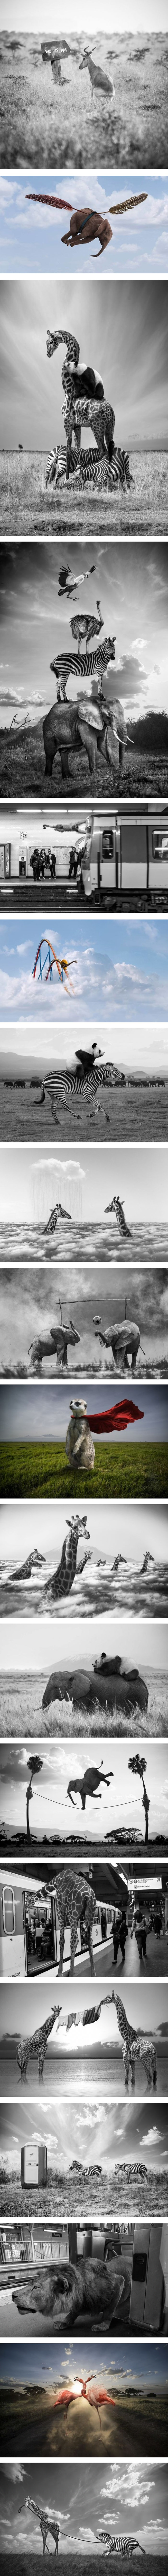 Fotografije koje pokazuju što životinje rade kada ih ljudi ne gledaju 